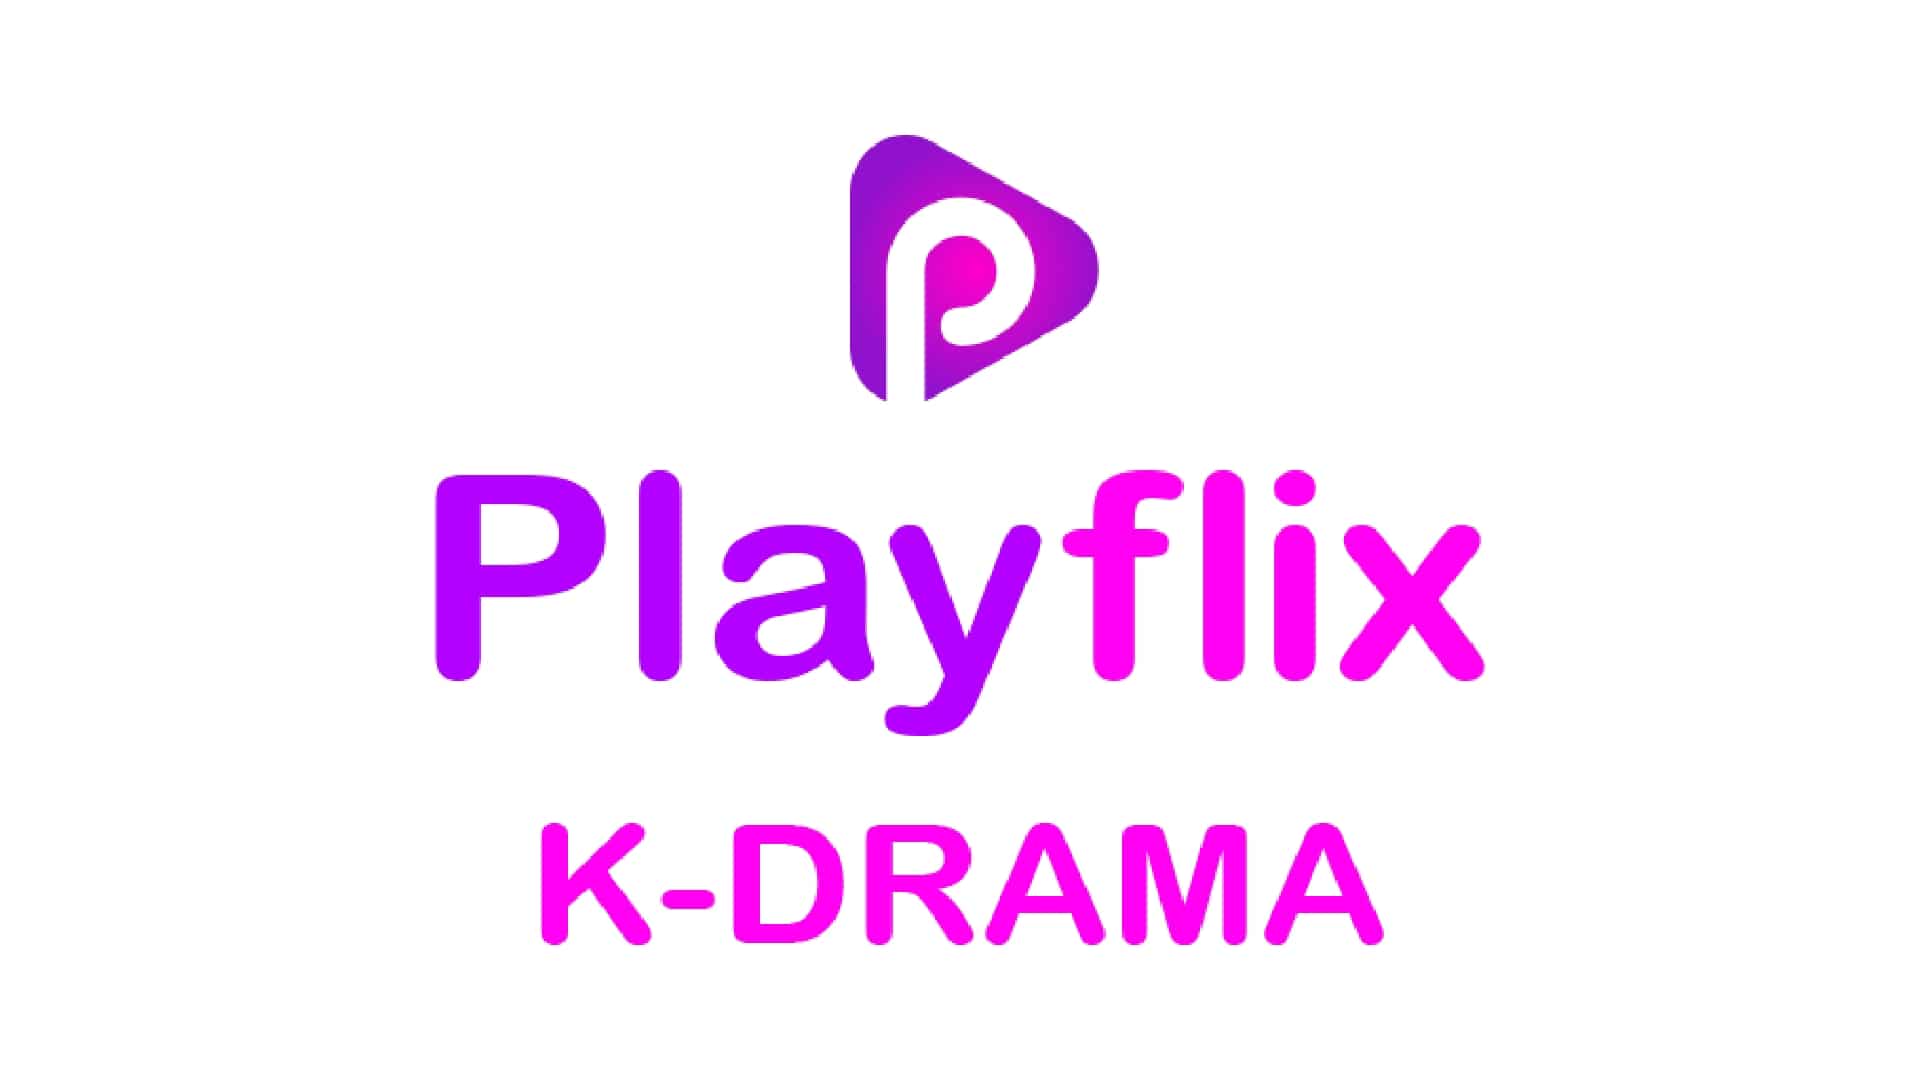 PlayFlix